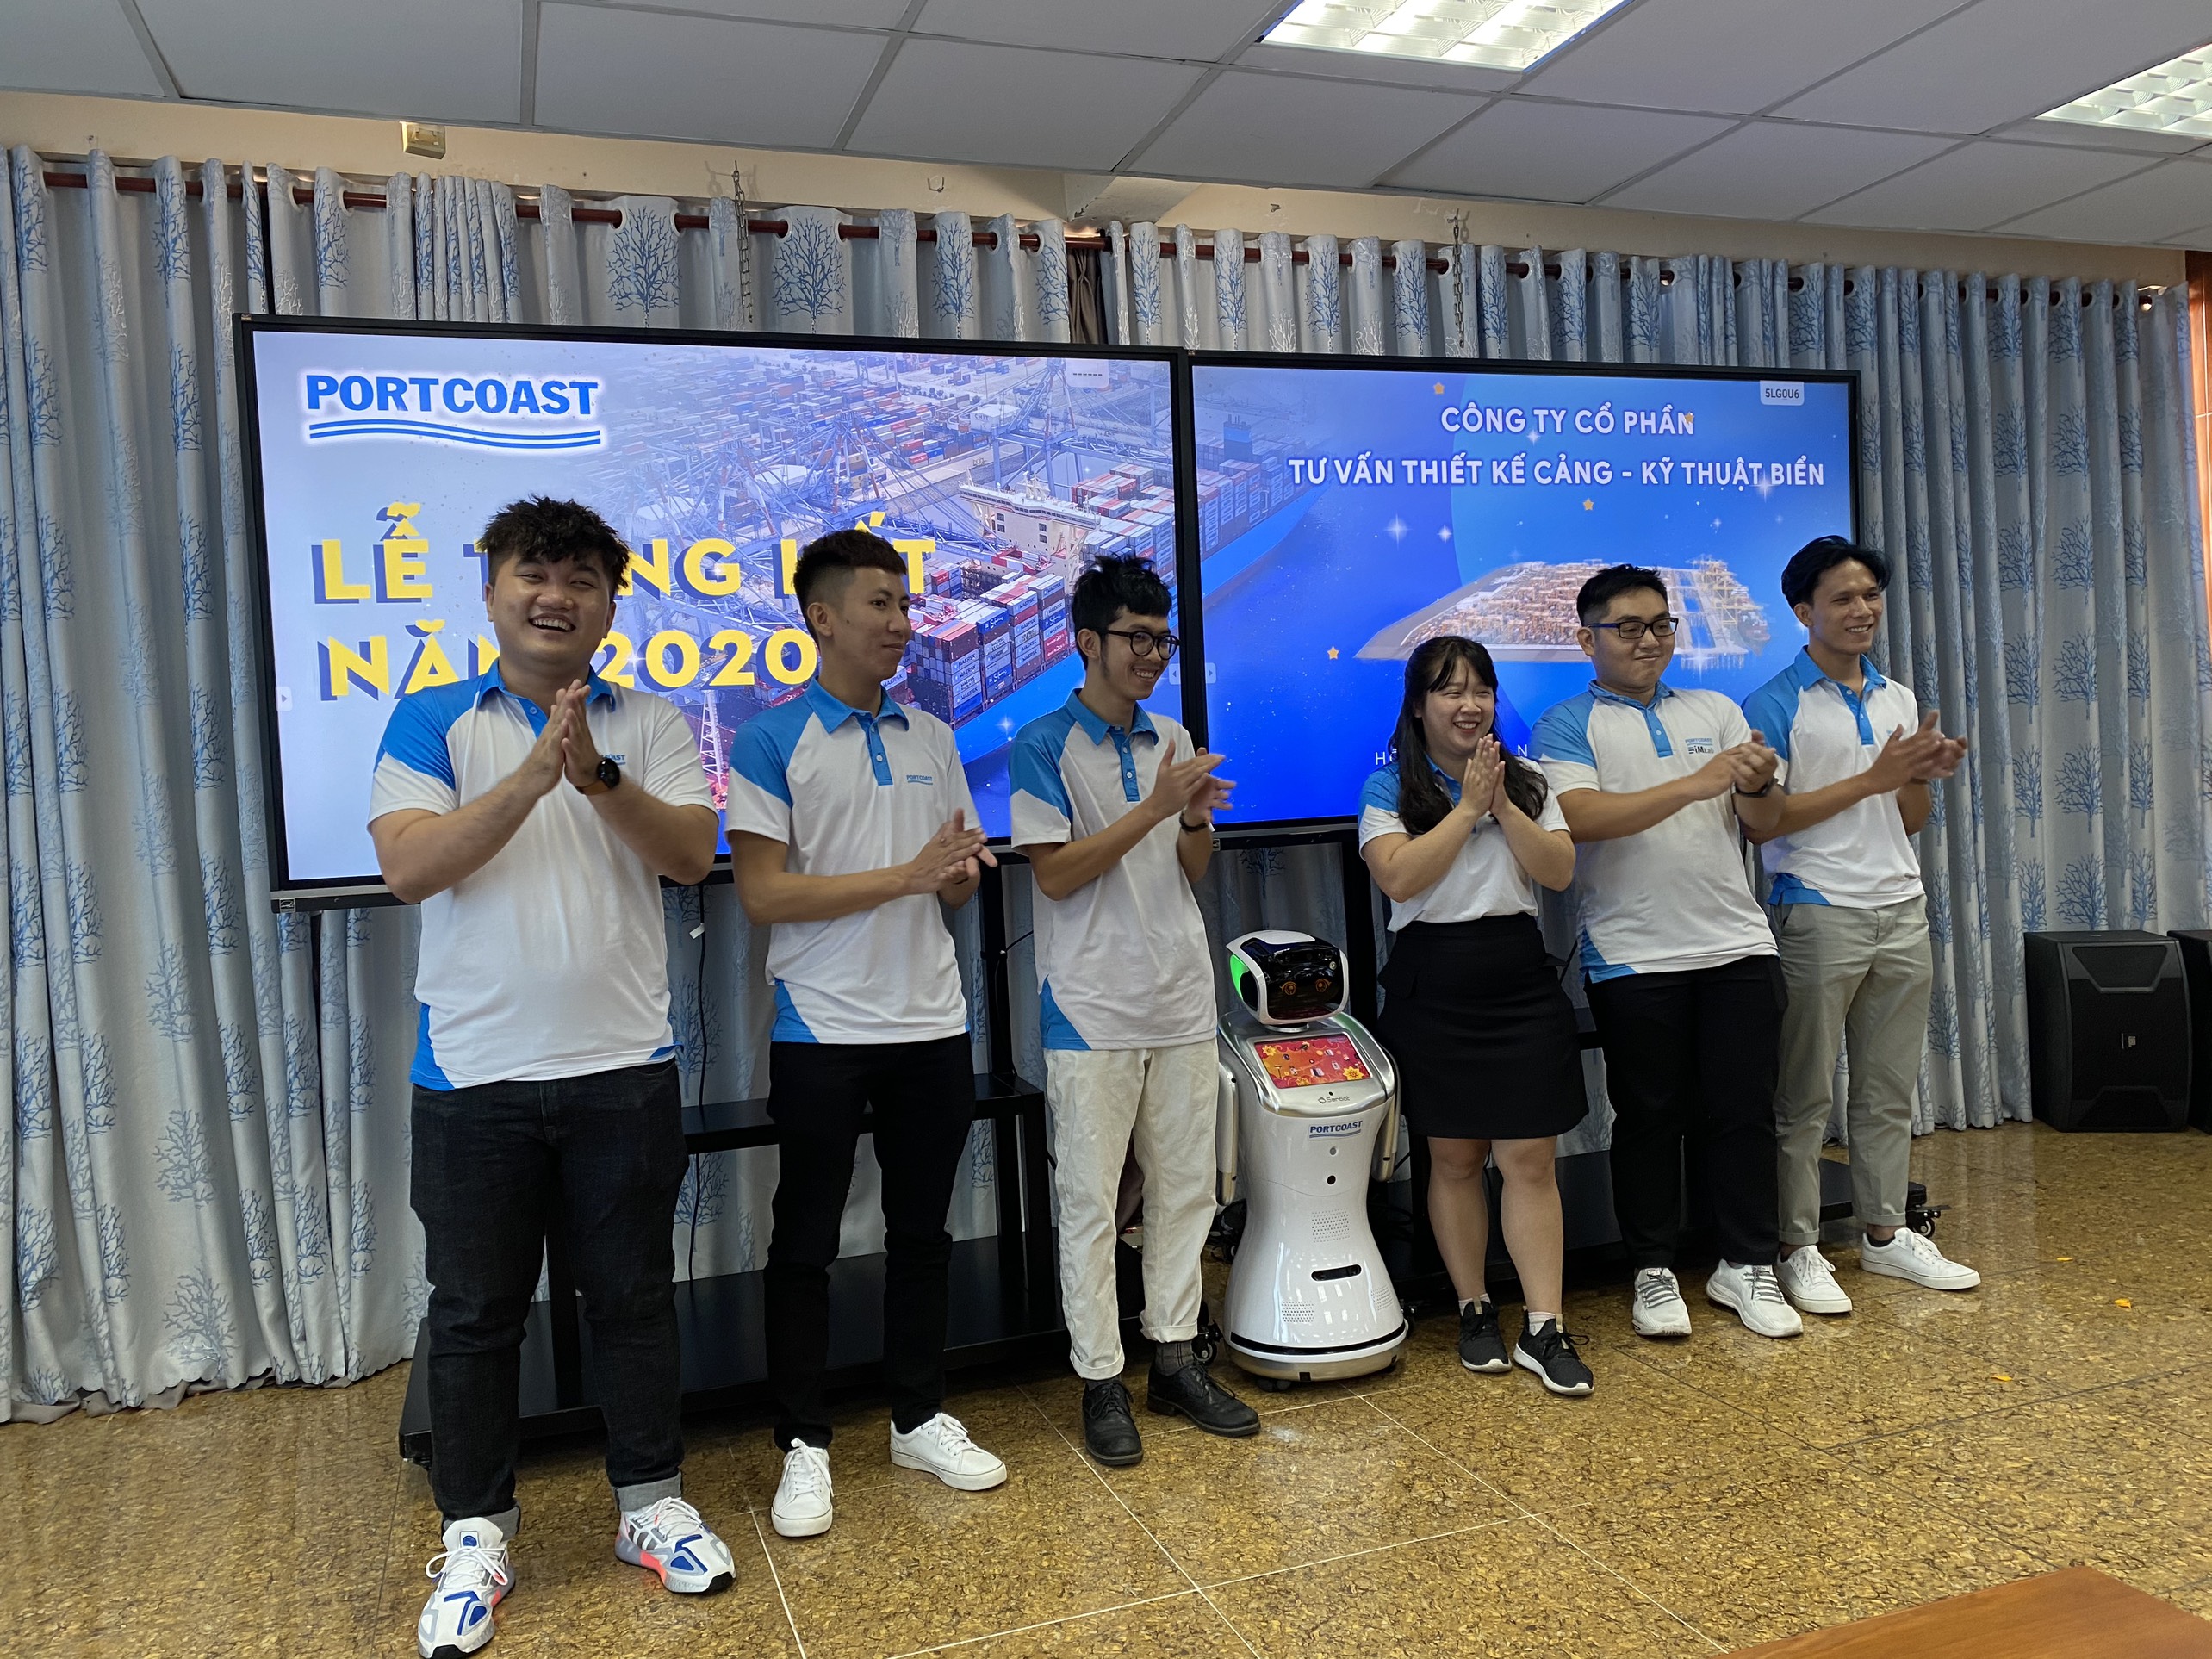 Dịch vụ cho thuê Robot sự kiện giá tốt tại Hà Nội và TP.HCM